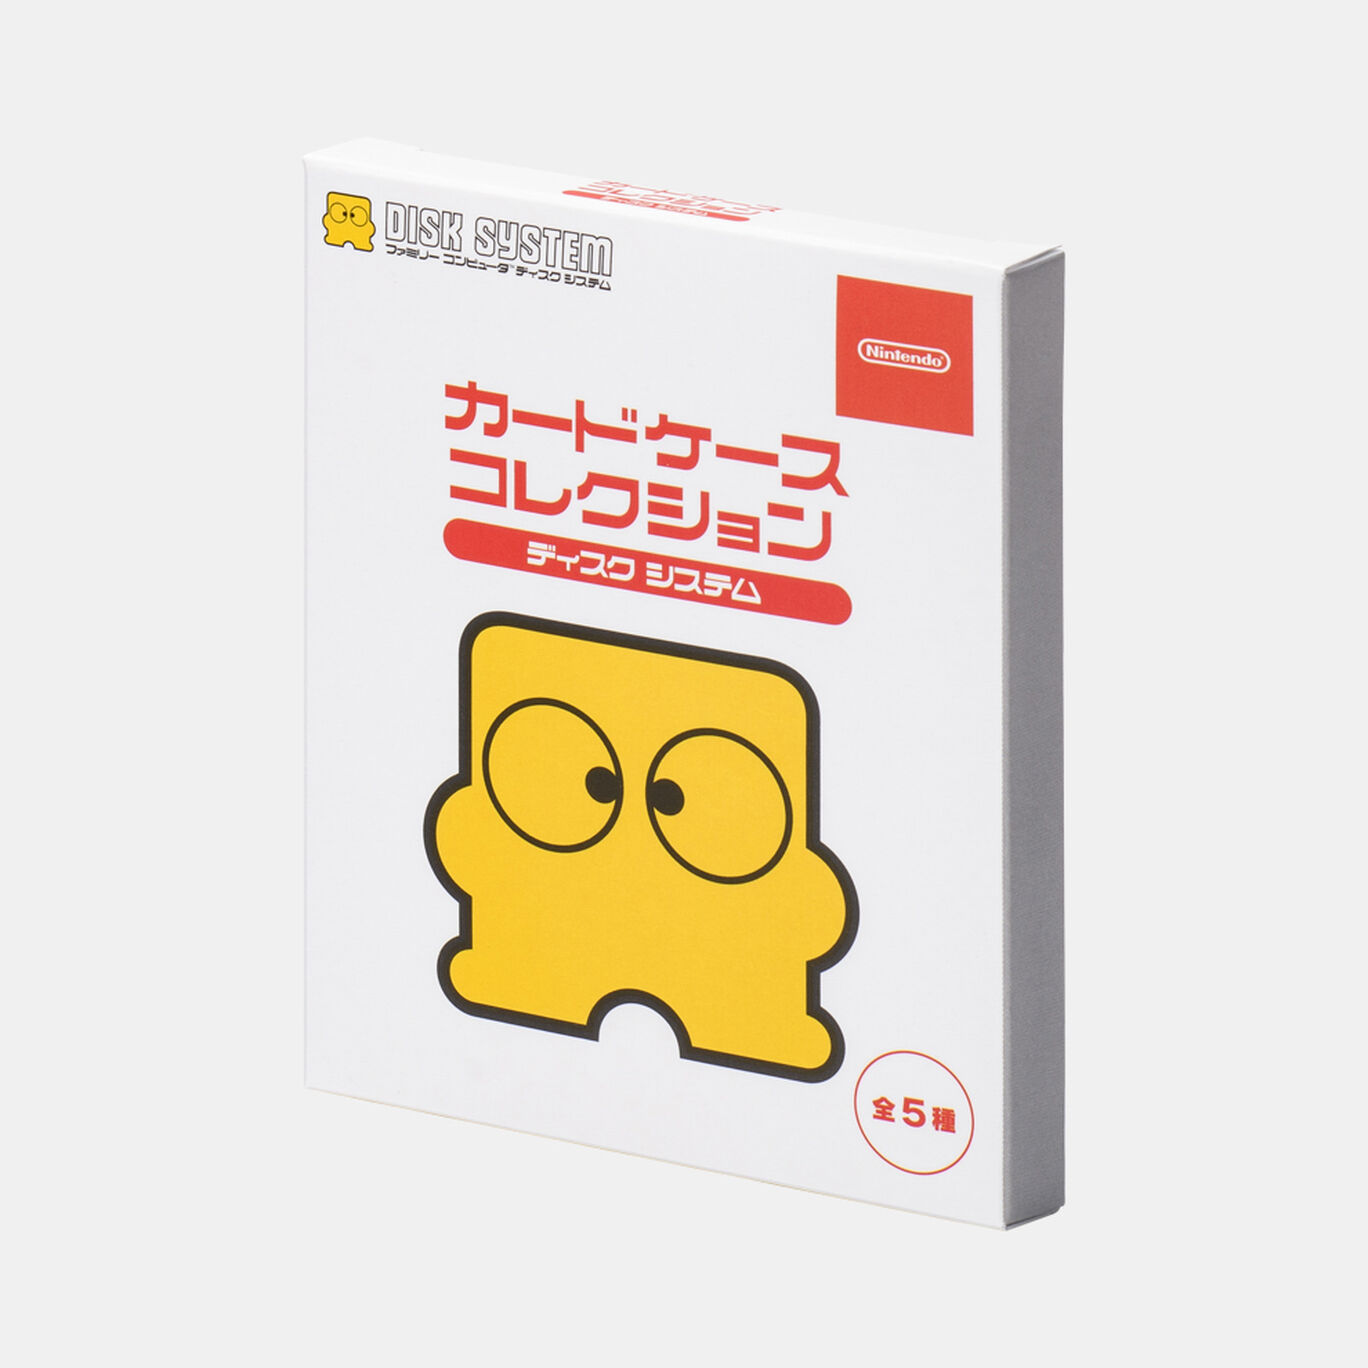 【単品】カードケースコレクション ディスクシステム【Nintendo TOKYO取り扱い商品】